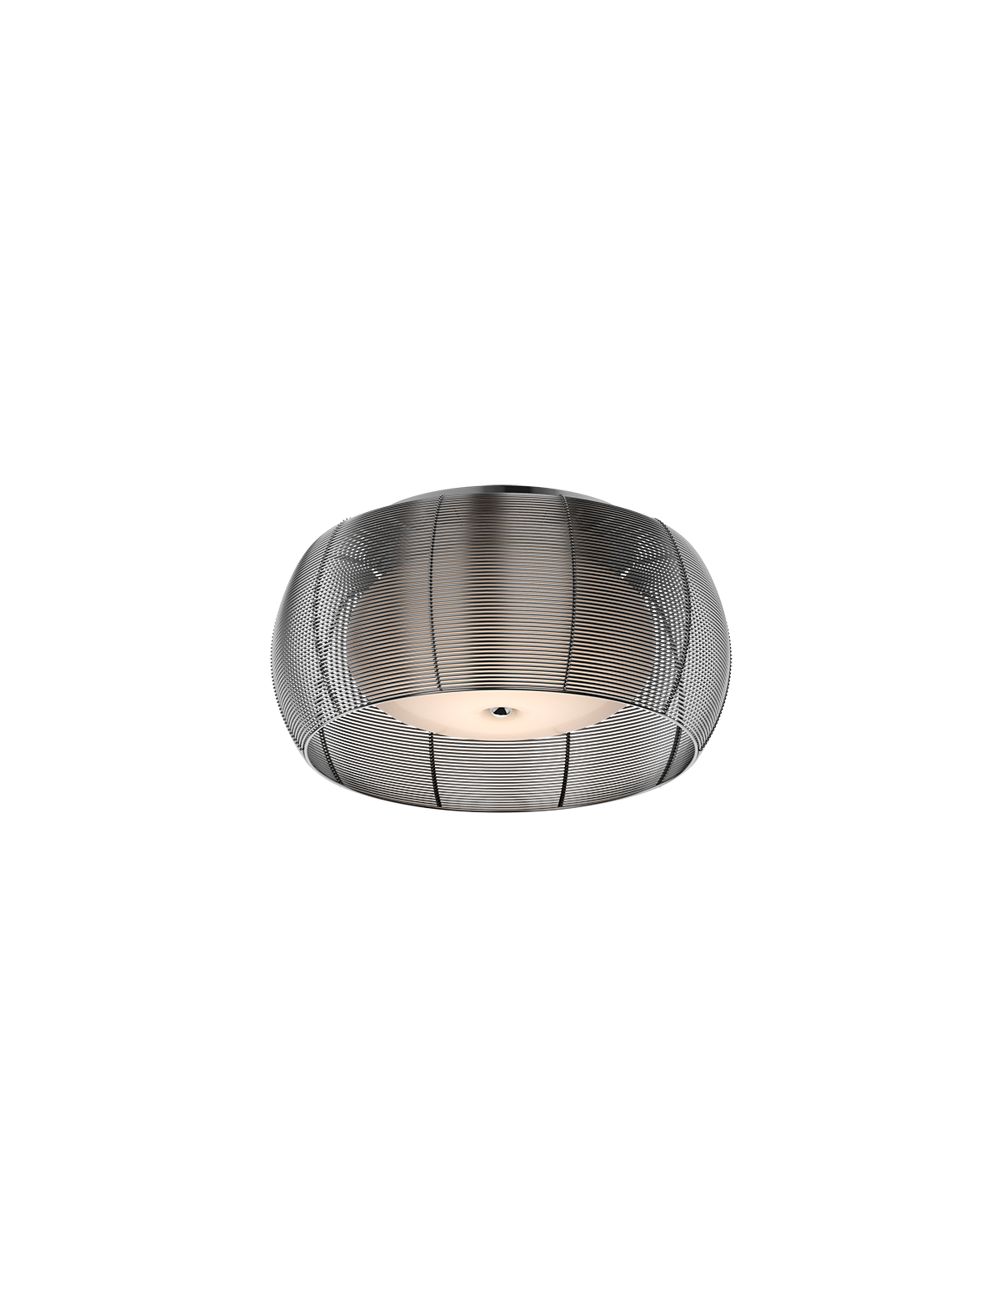 Lampa plafon metalowy z kloszem szklanym srebrny Tango MX1104-2 (silver)